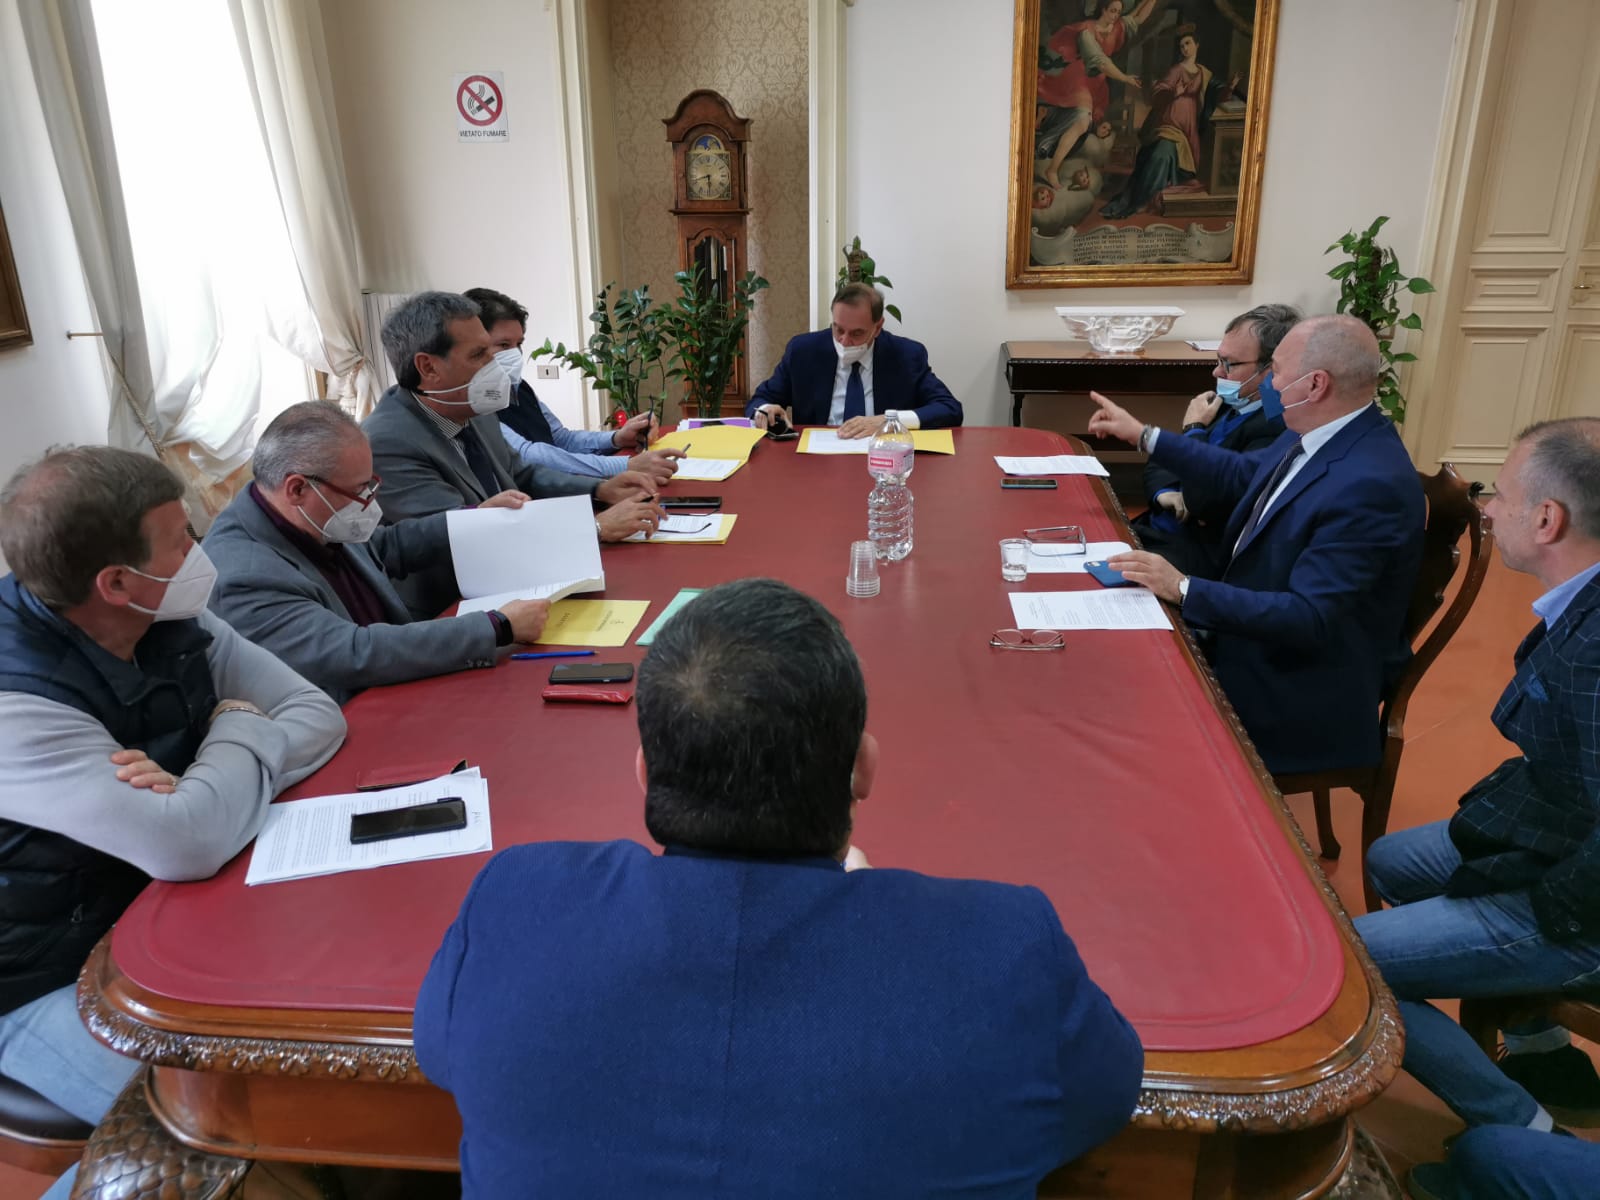 Benevento| “Sicurezza e legalità per lavoro e investimenti”: firmato il protocollo d’intesa tra il Comune e le organizzazioni sindacali